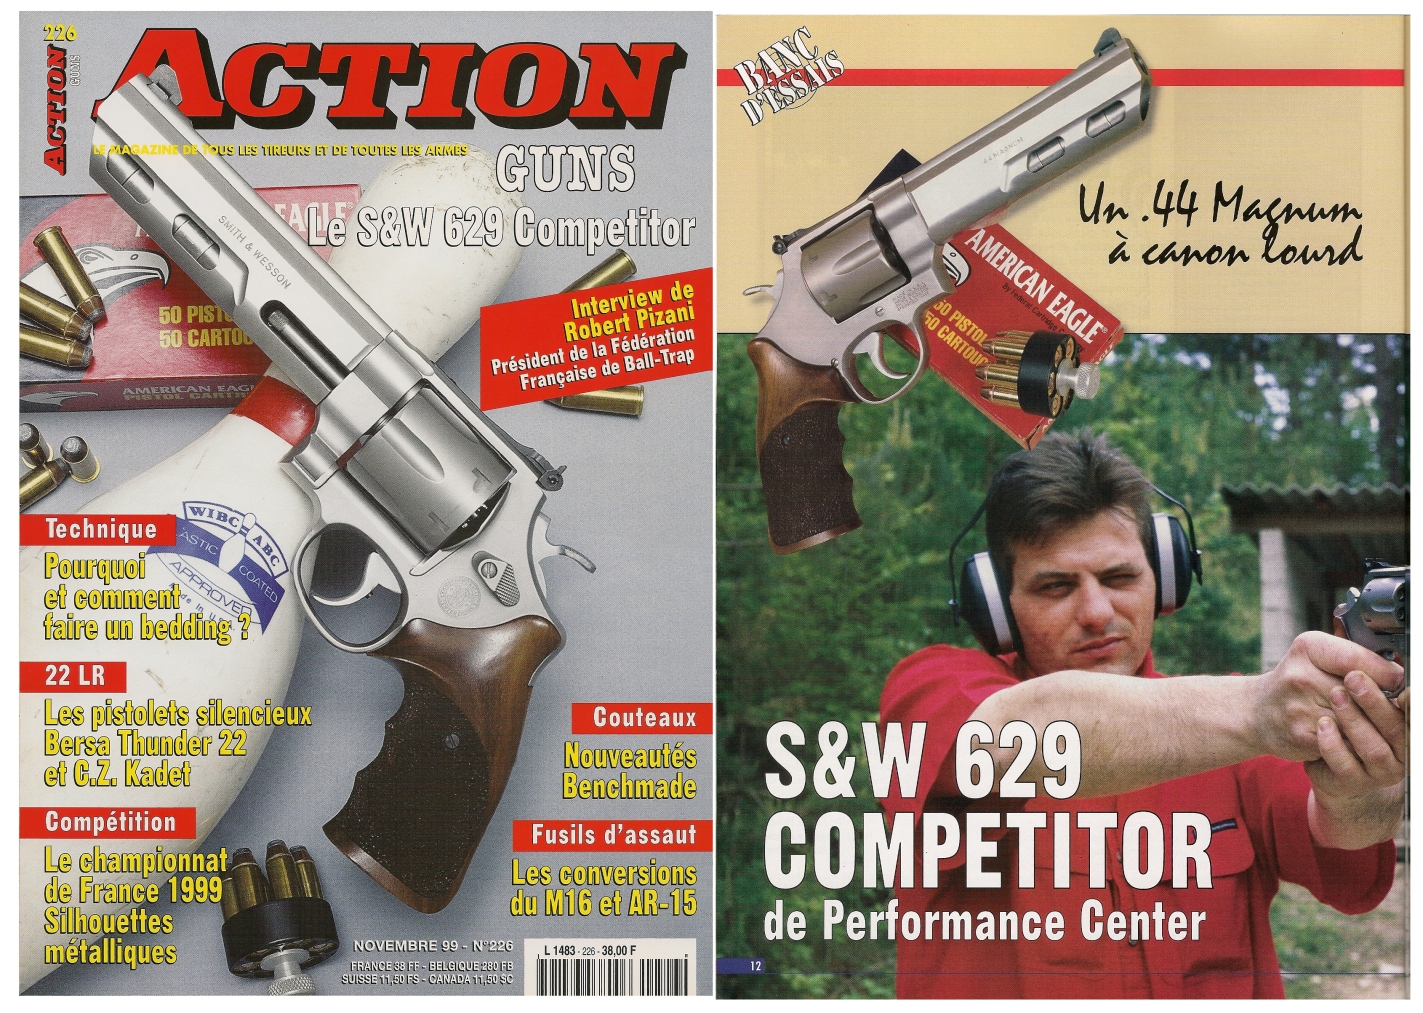 Le banc d'essai du revolver S&W 629 Competitor a été publié sur 6 pages dans le magazine Action Guns n° 226 (novembre 1999).